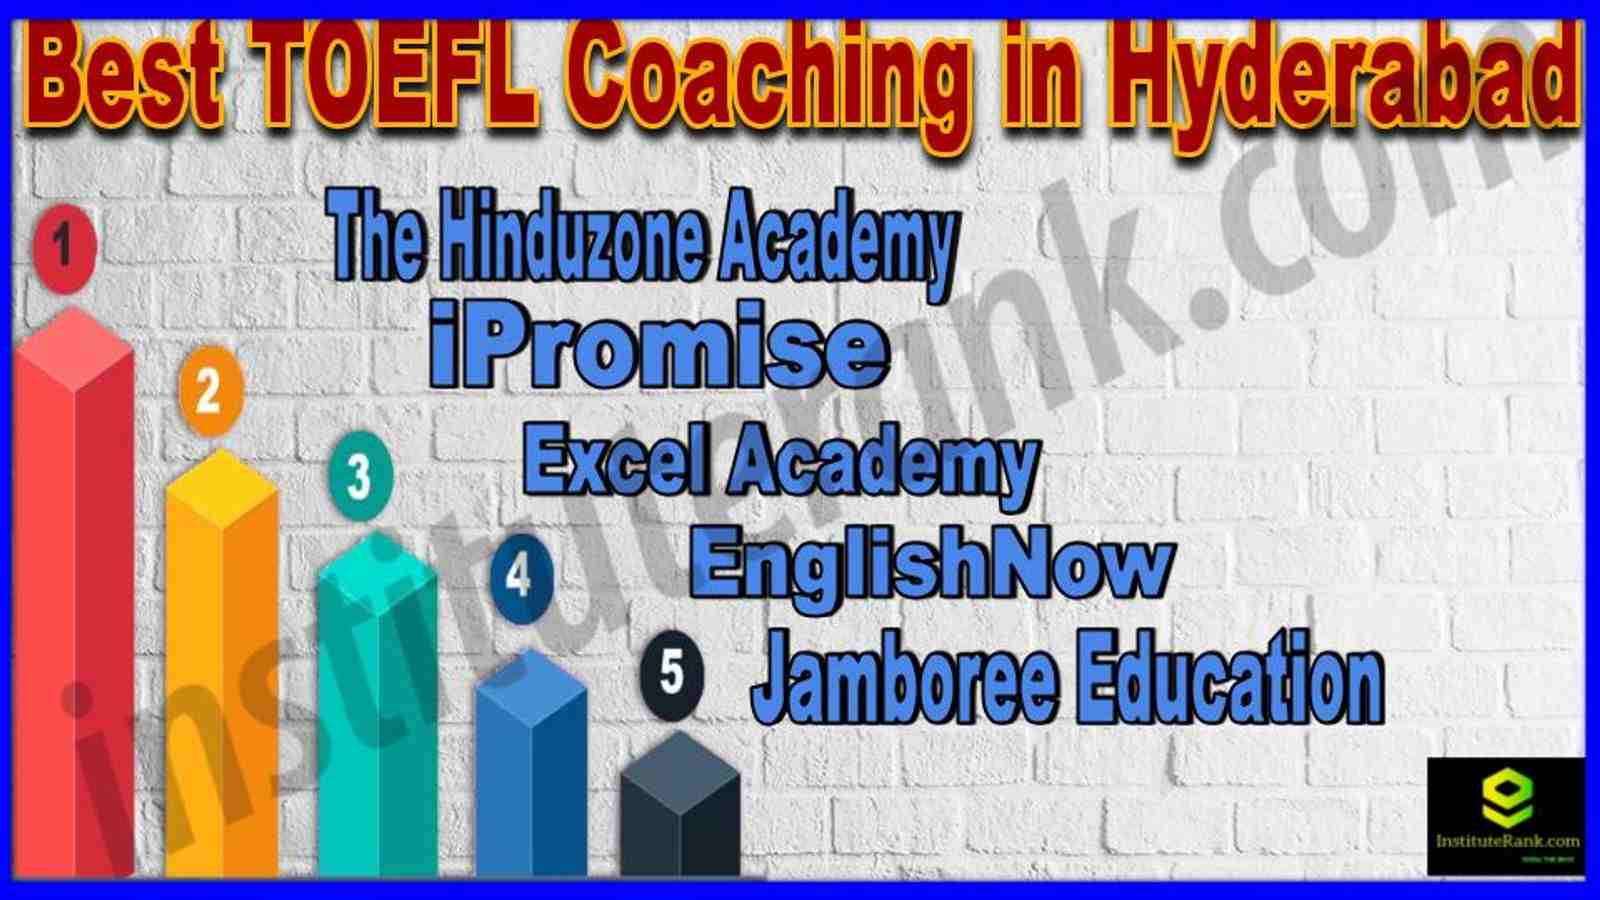 Best TOEFL Coaching in Hyderabad